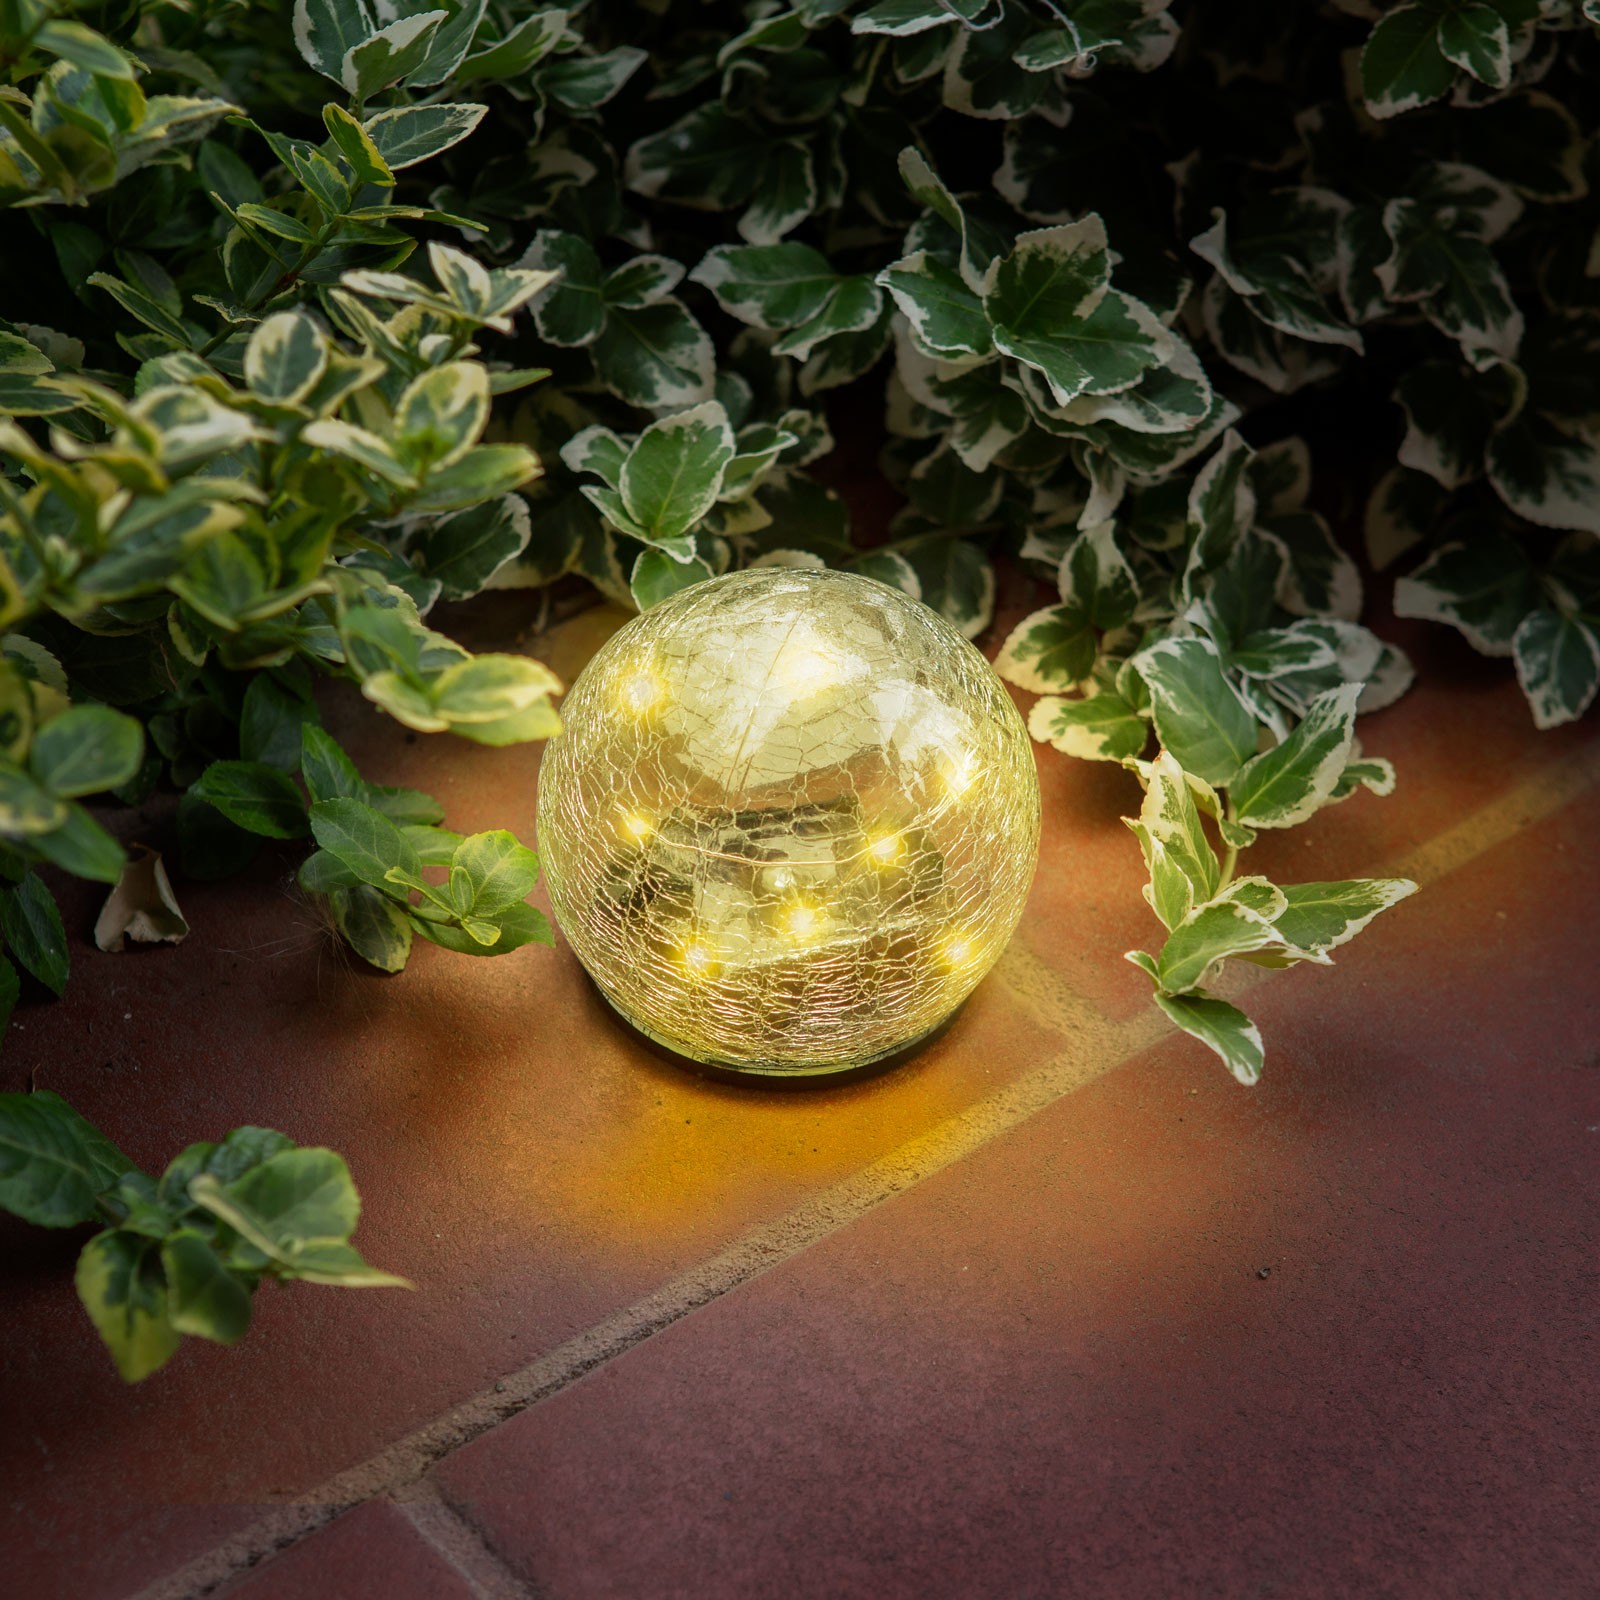 lampa solara sfera sticla - 10 cm - 10 led alb cald